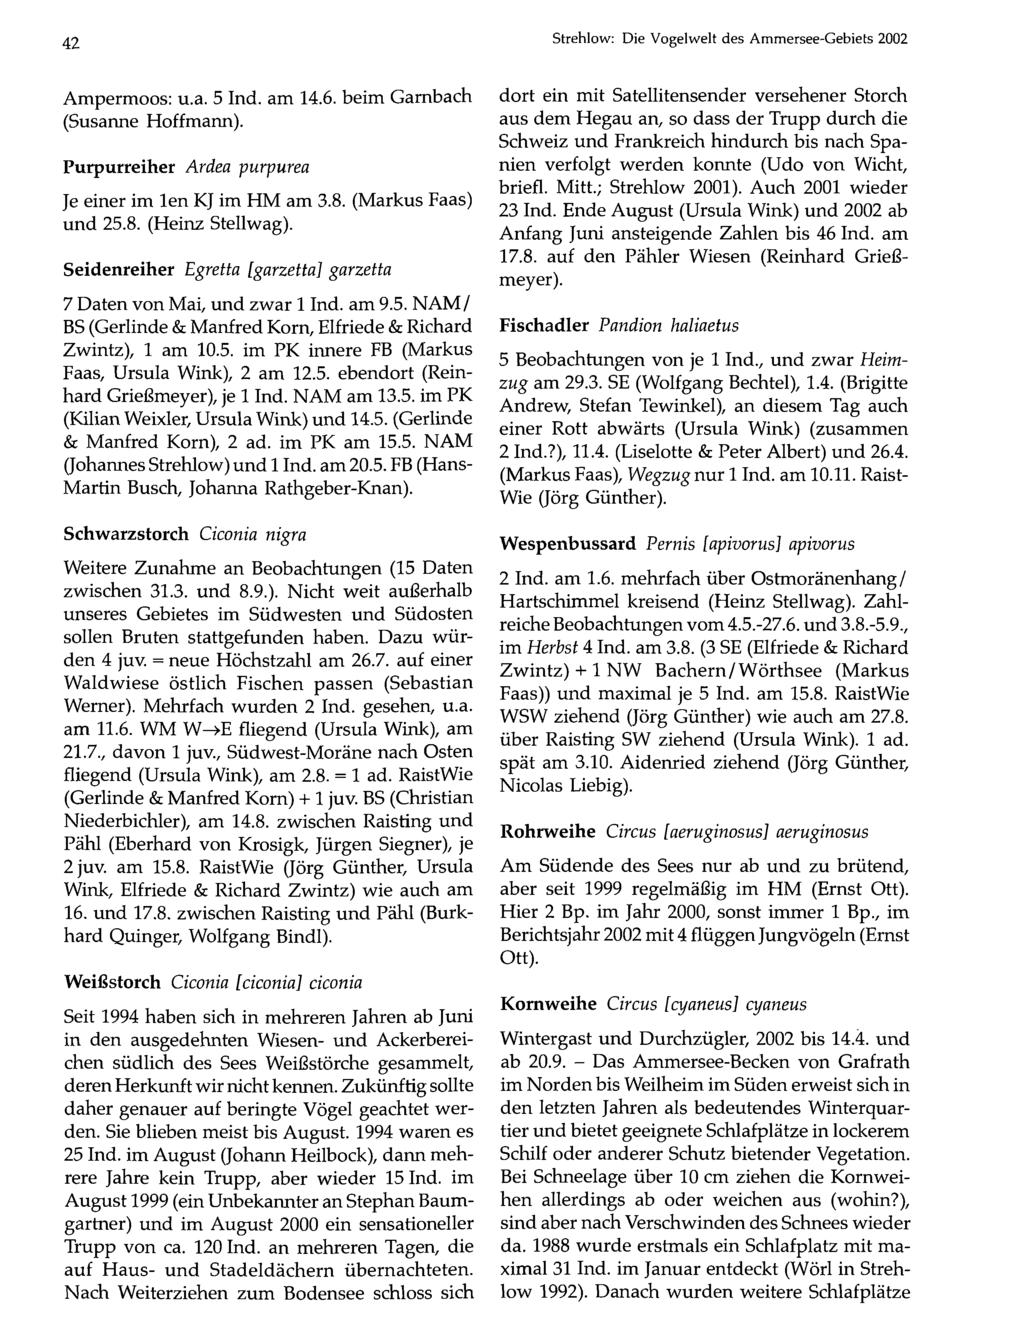 Ornithologische Gesellschaft Bayern, download 42 Strehlow: unter www.biologiezentrum.at Die Vogelwelt des Ammersee-Gebiets 2002 Ampermoos: u.a. 5 Ind. am 14.6. beim Garnbach (Susanne Hoffmann).